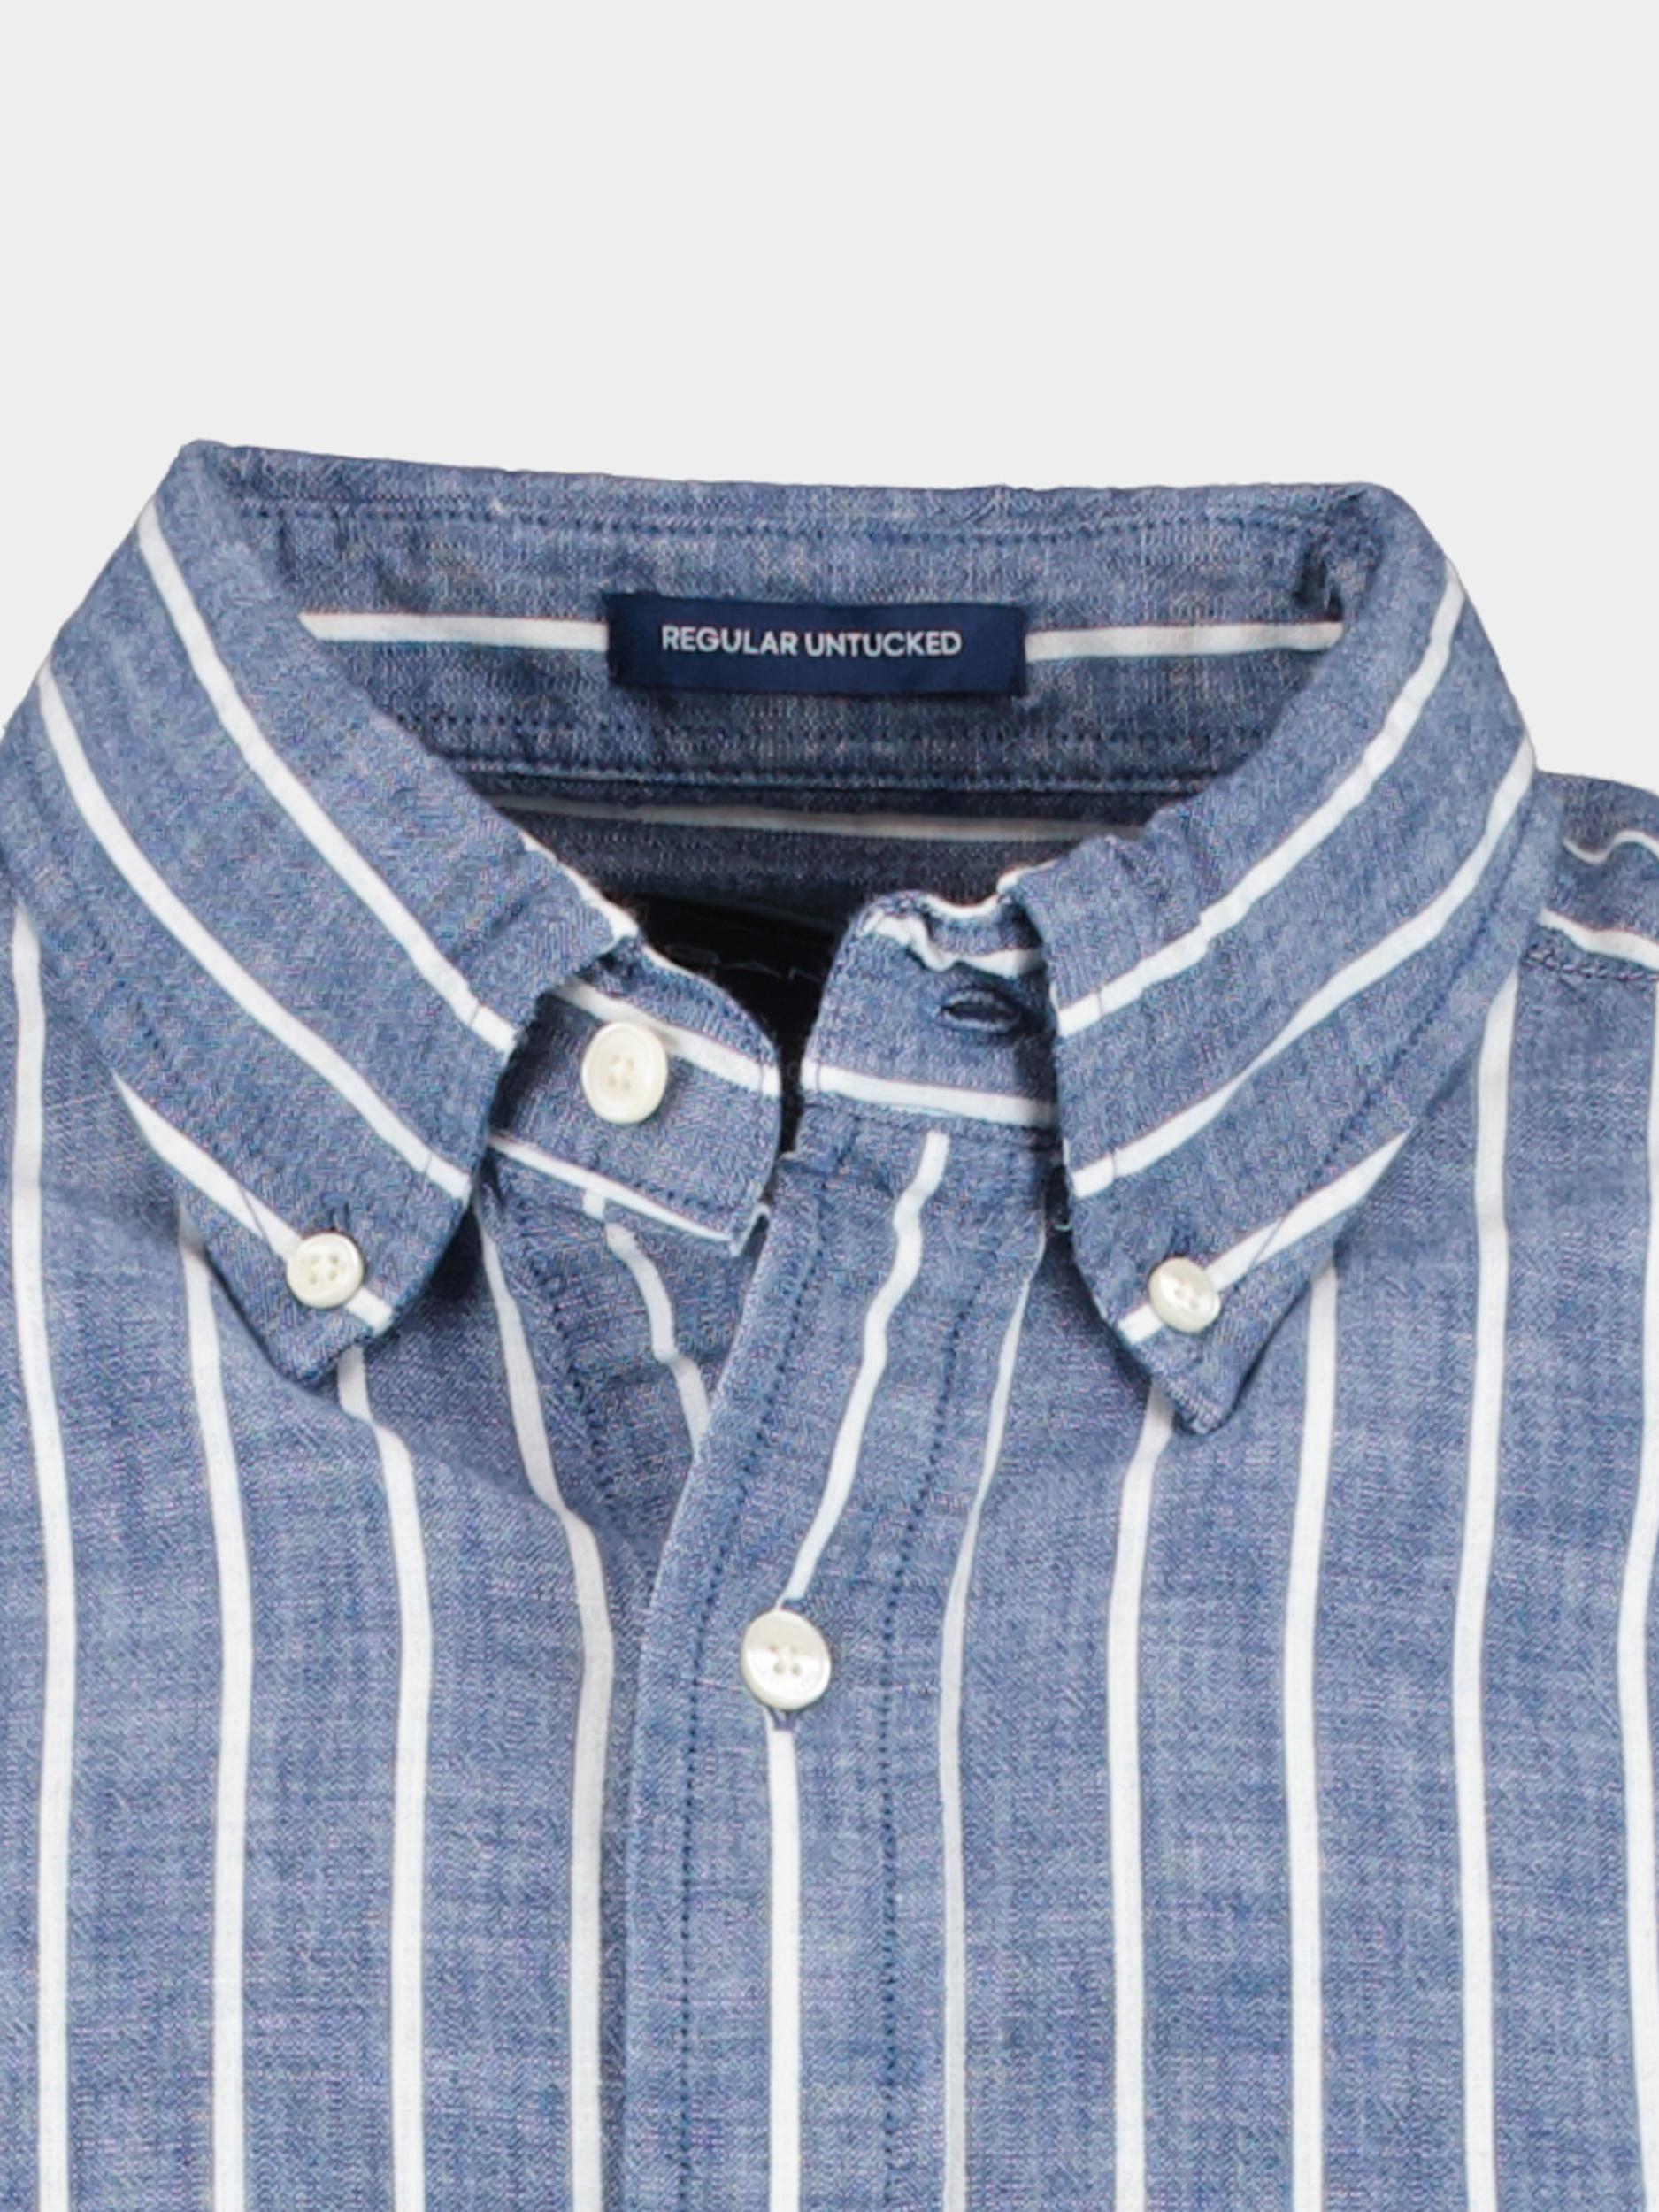 Gant Casual hemd lange mouw Blauw Reg UT Chambray Stripe Shirt 3230014/434